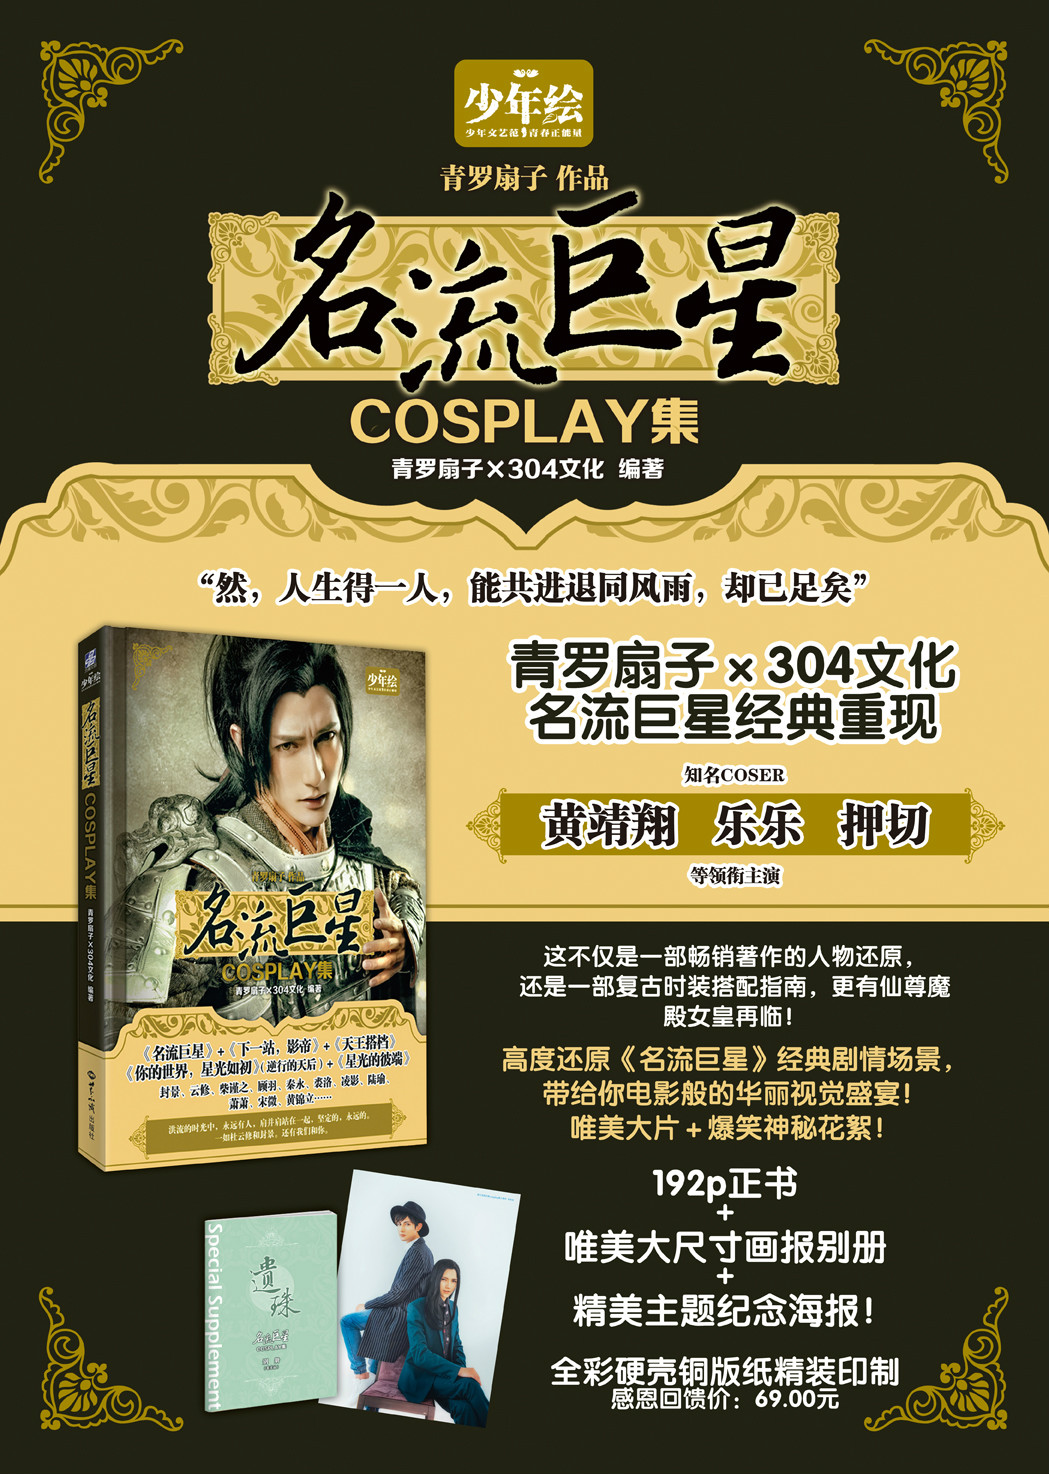 《名流巨星cosplay集》宣傳海報